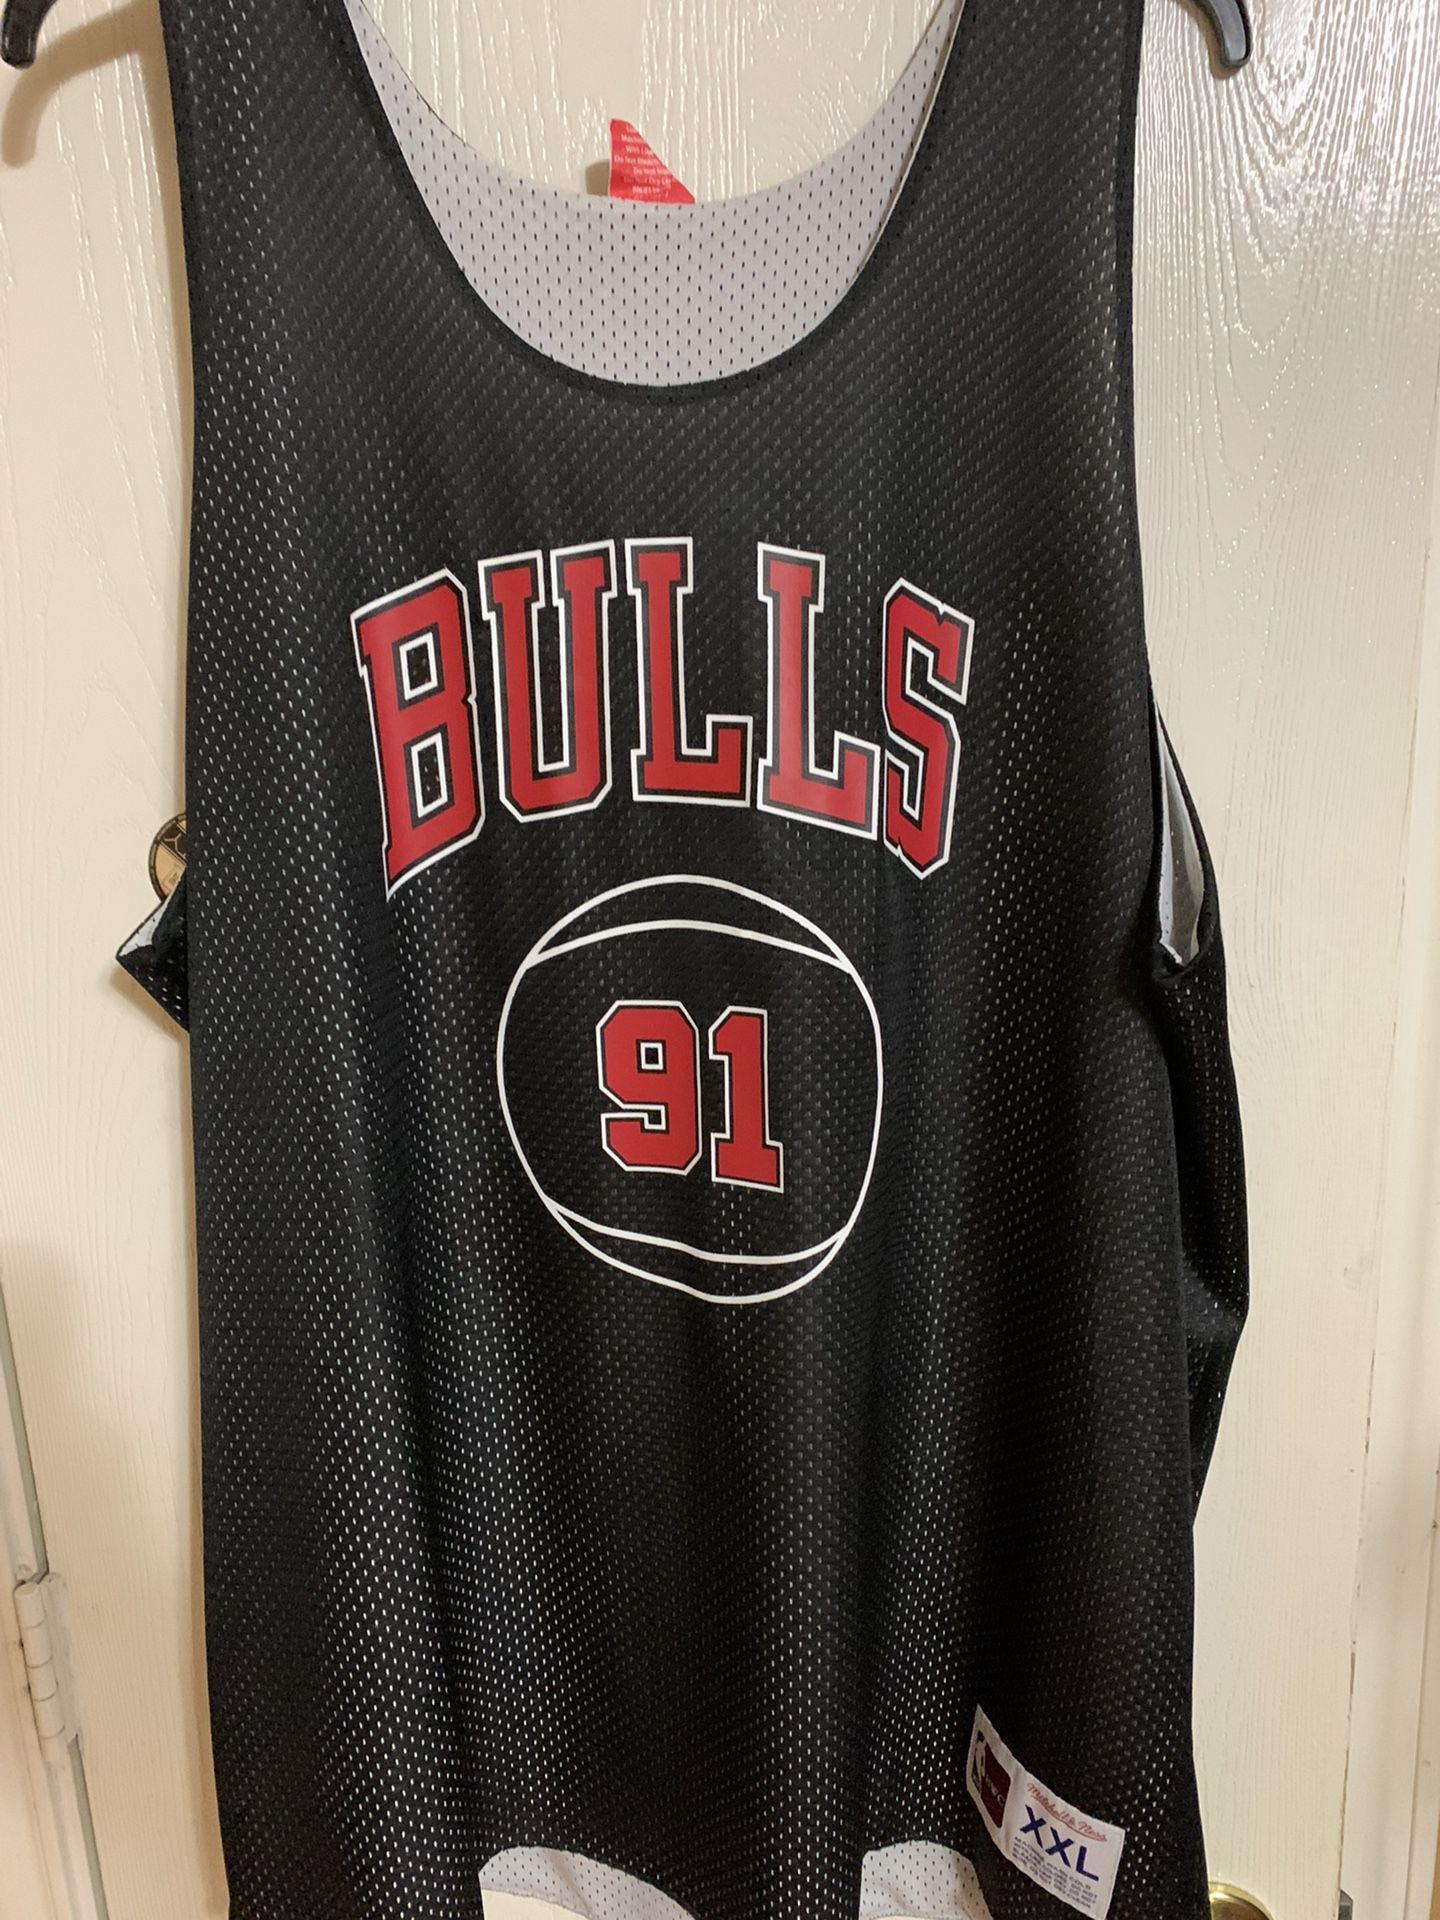 Chicago bulls Dennis Rodman jersey for Sale in Schiller Park, IL - OfferUp